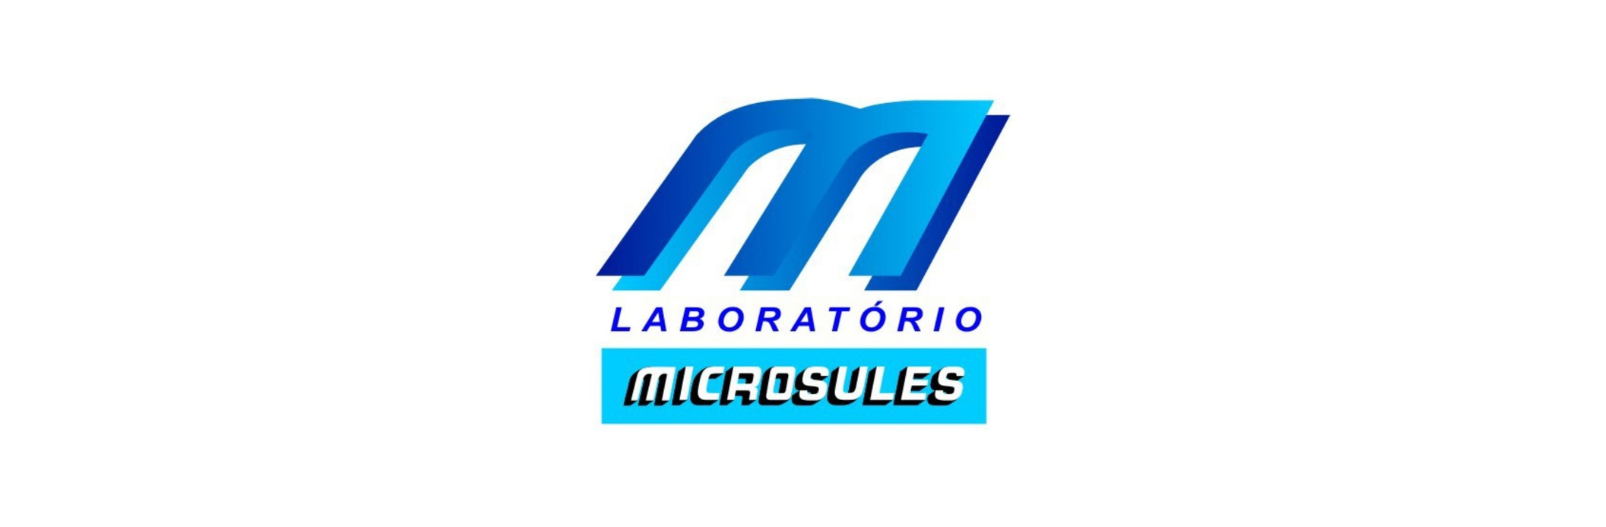 LABORATORIO MICROSULES